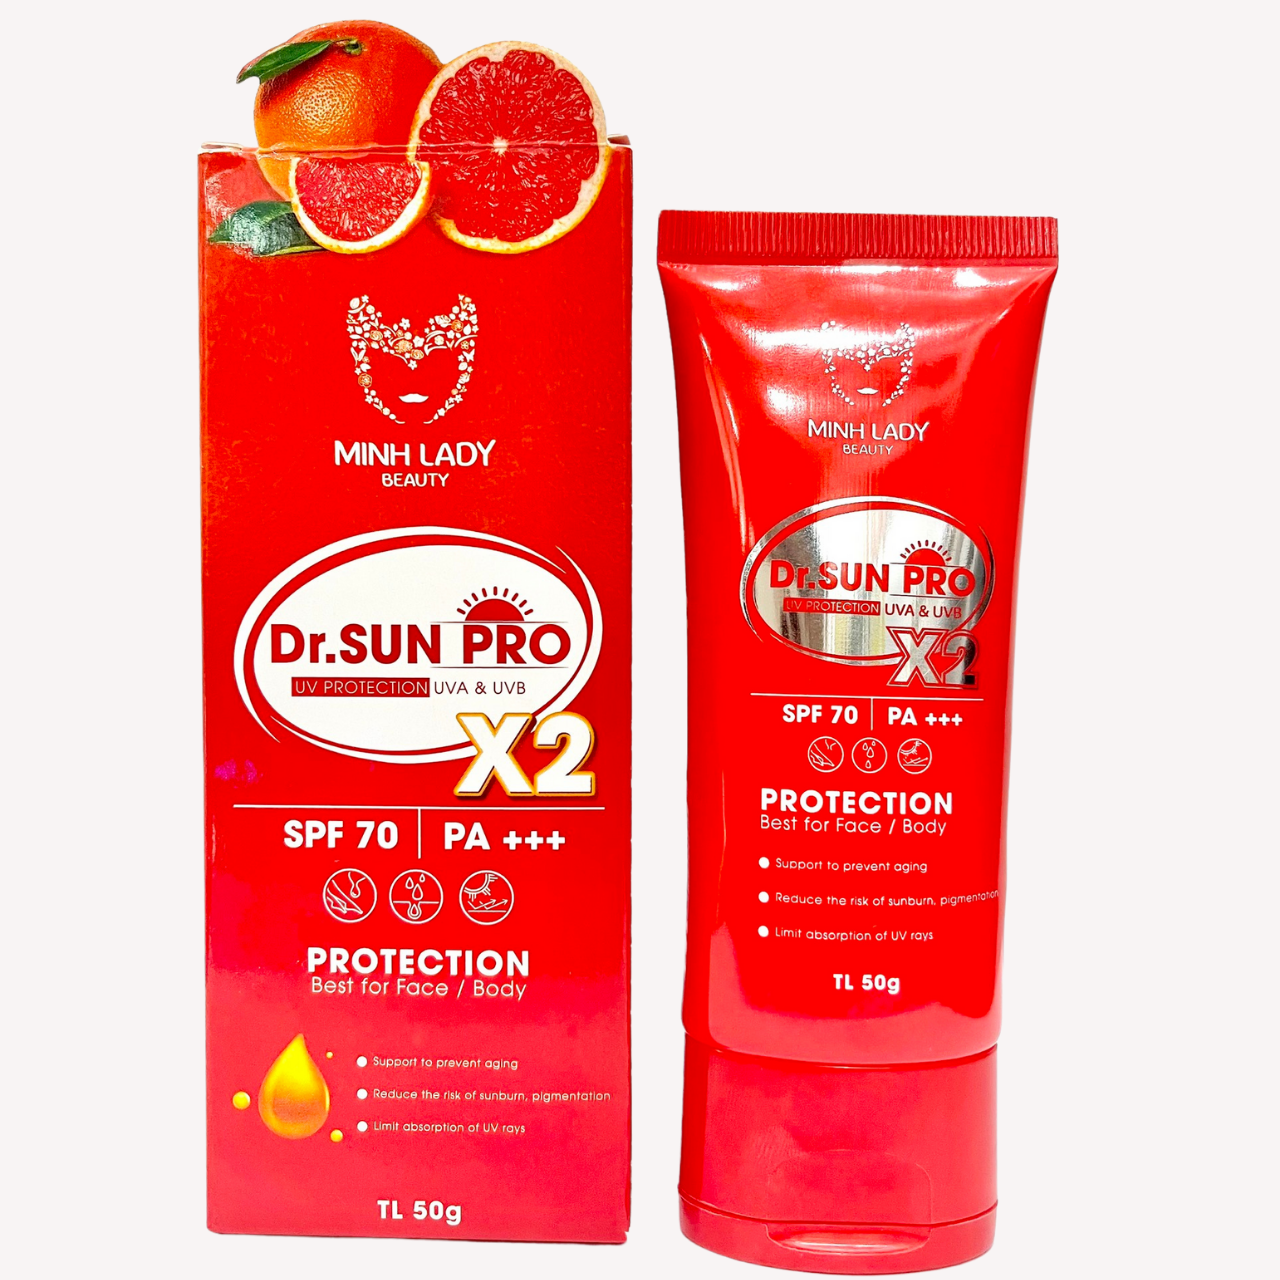 Kem chống nắng Dr.Sun Pro Minh Lady Beauty SPF 70 PA +++ tuyp 50gr dành cho mọi loại da Mụn nám dầu